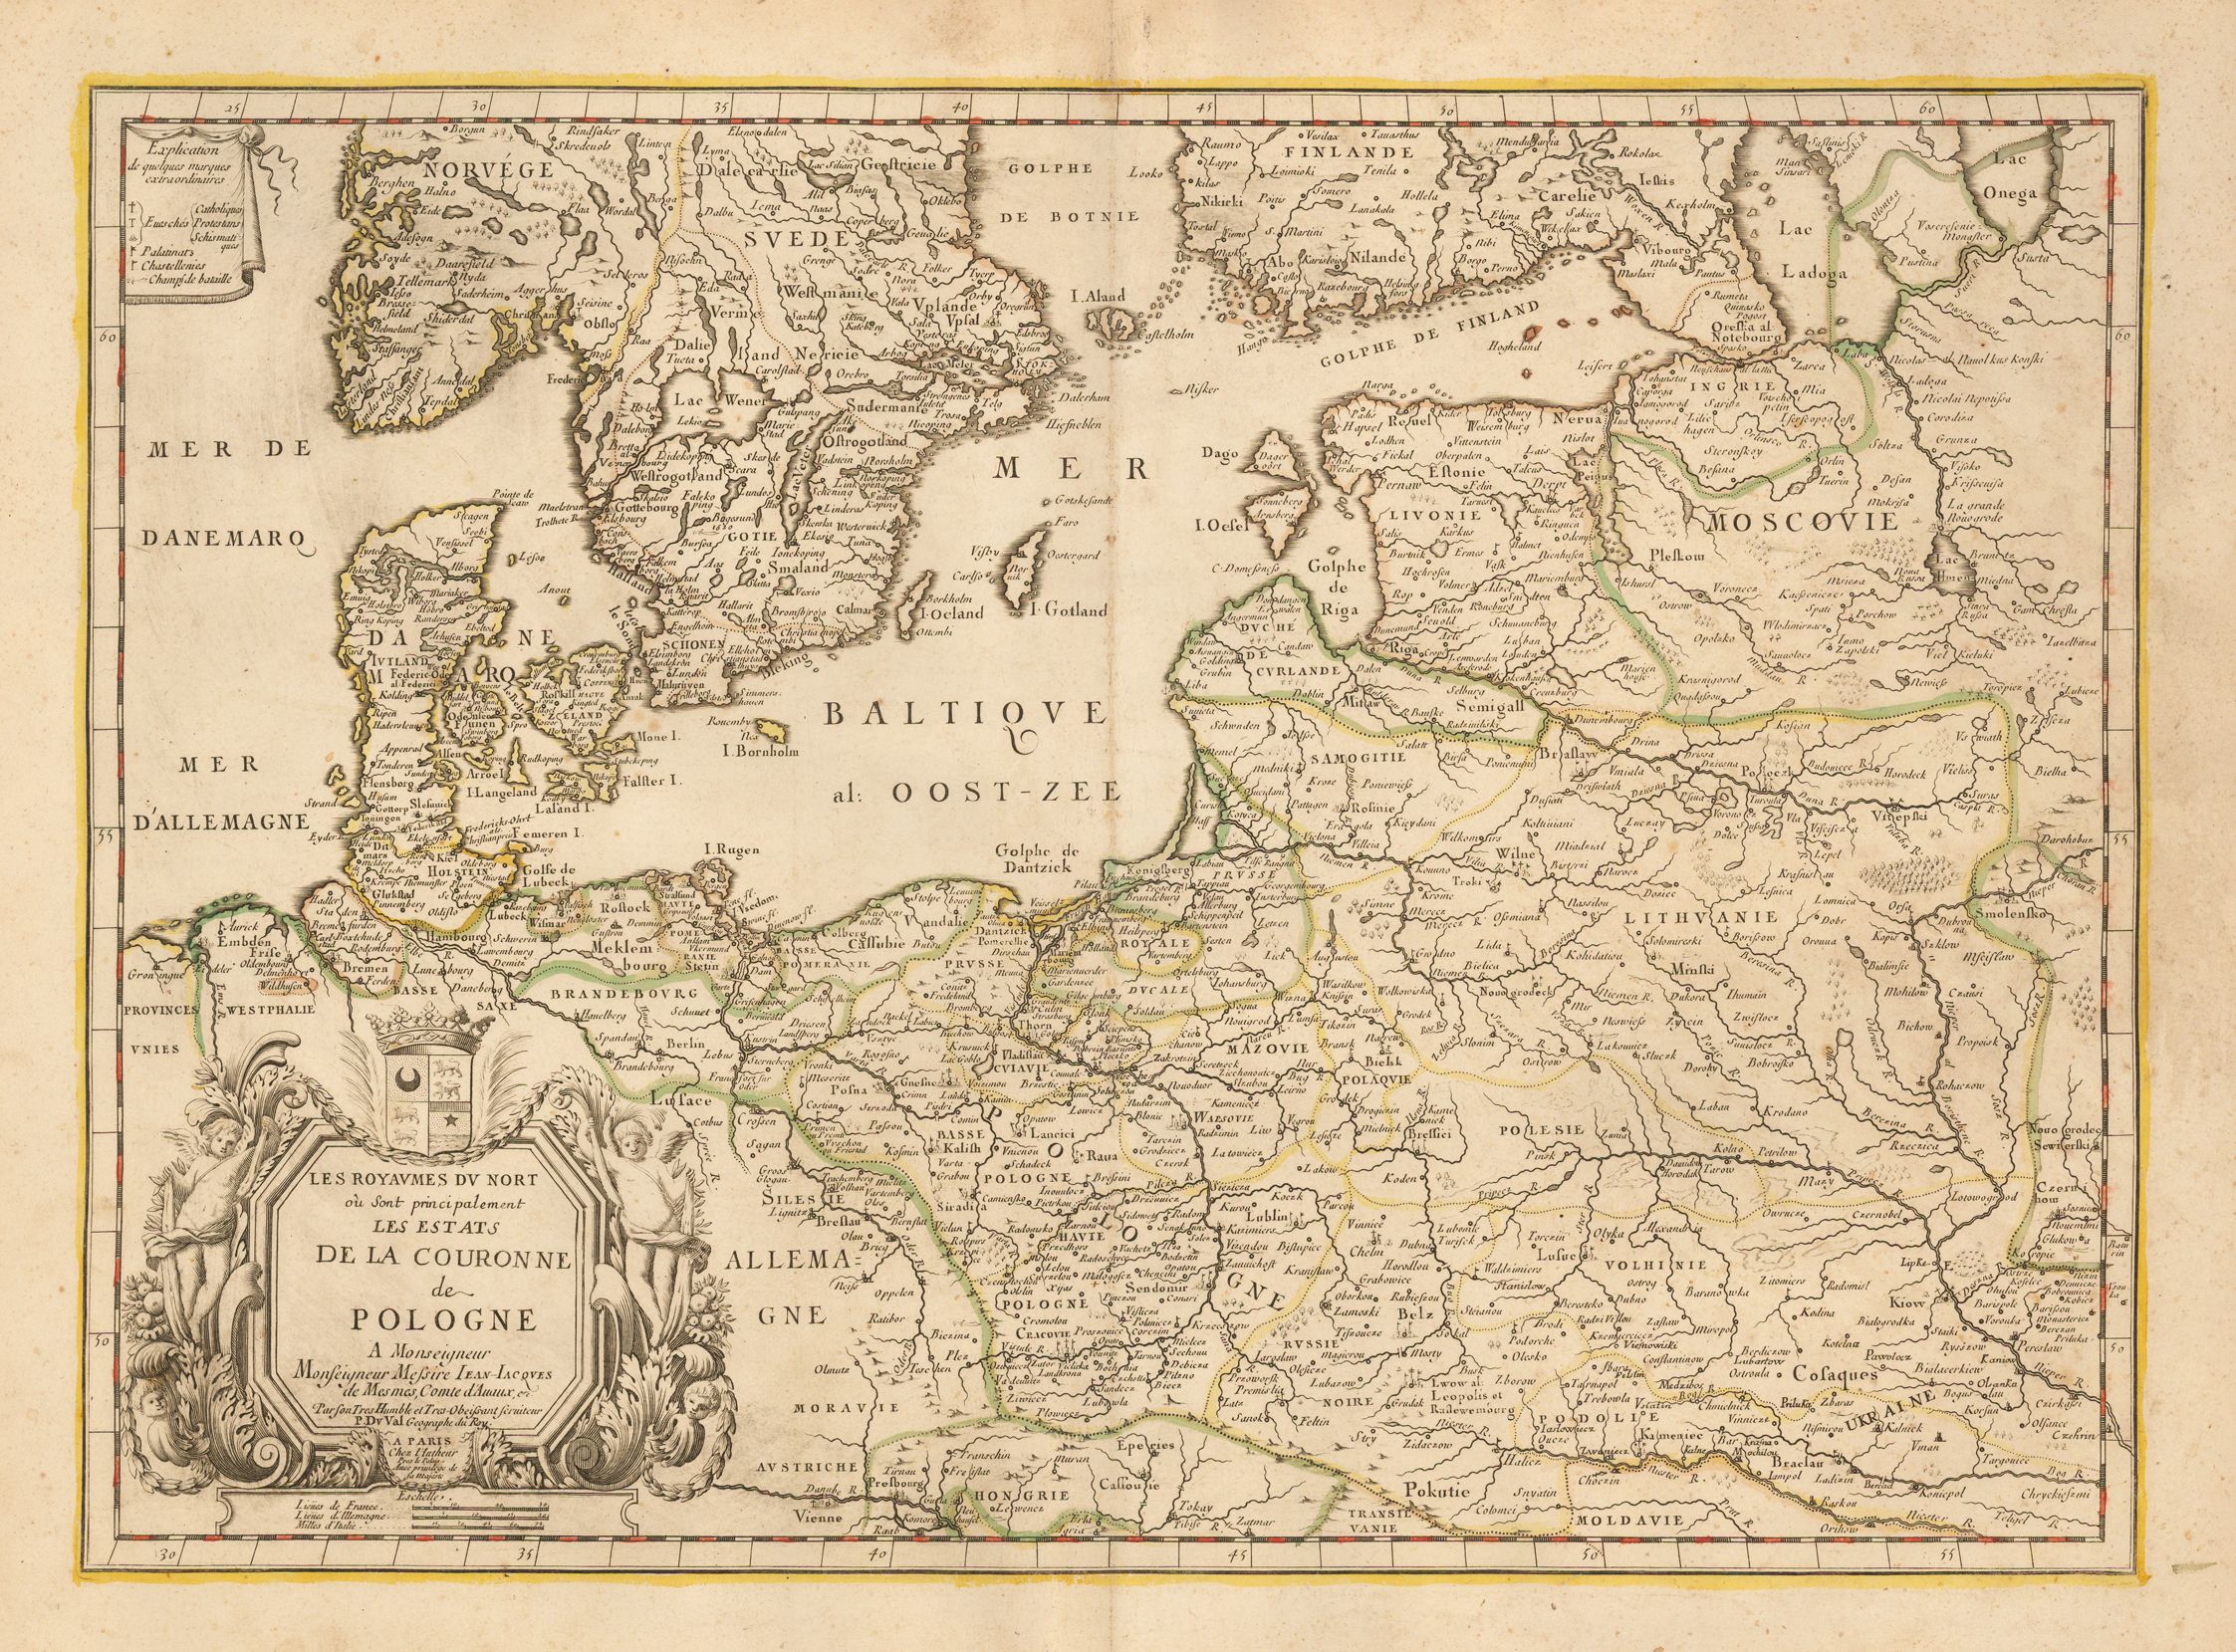 1666 Pierre Duval: "LES ROYAUMES DU NORT ou Sont principalement LES ETATS DE LA COURONNE de POLOGNE," Paris, 15.7 x 21.9 inches